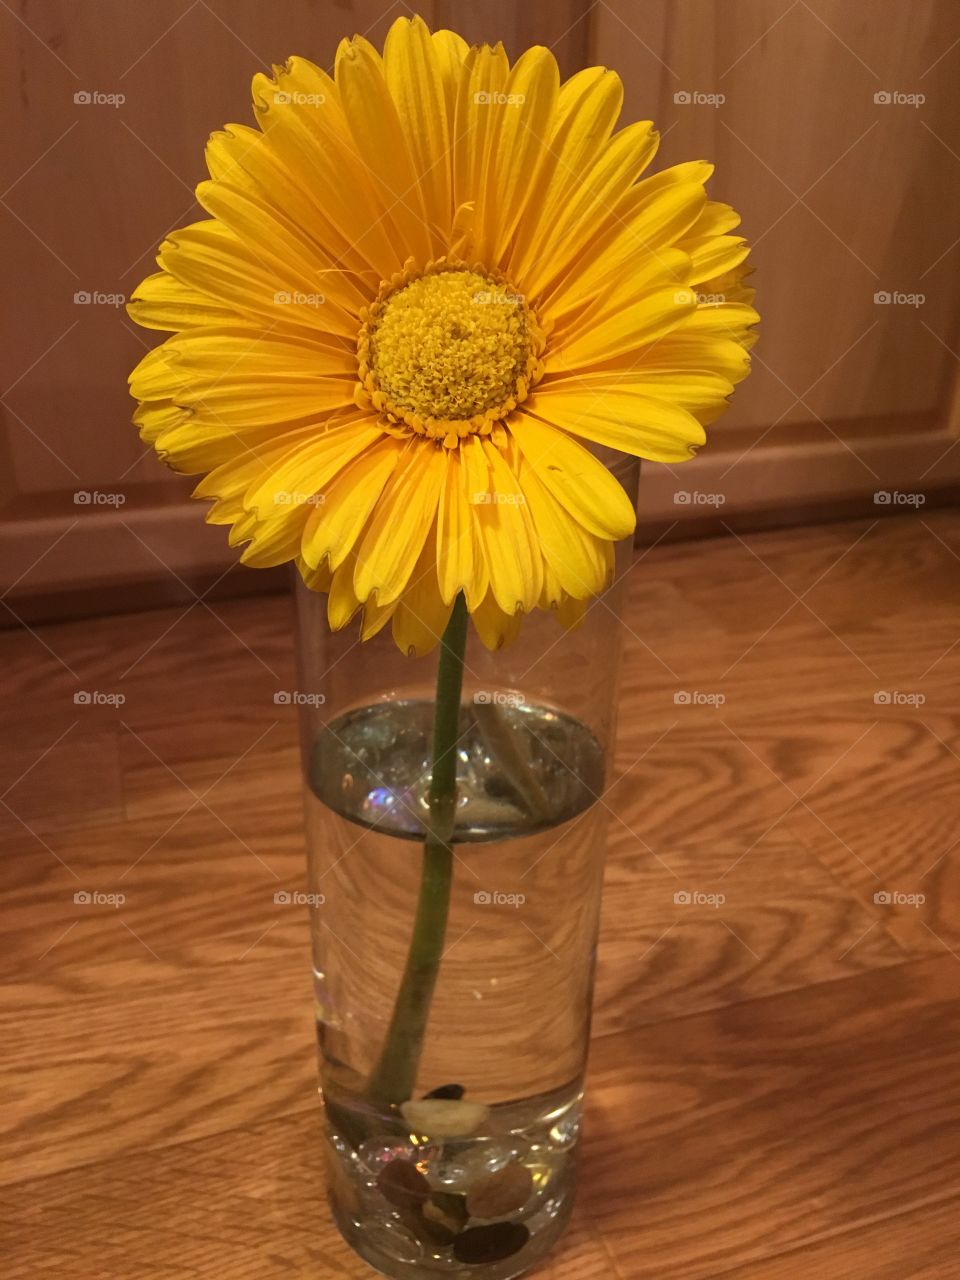 One daisy 